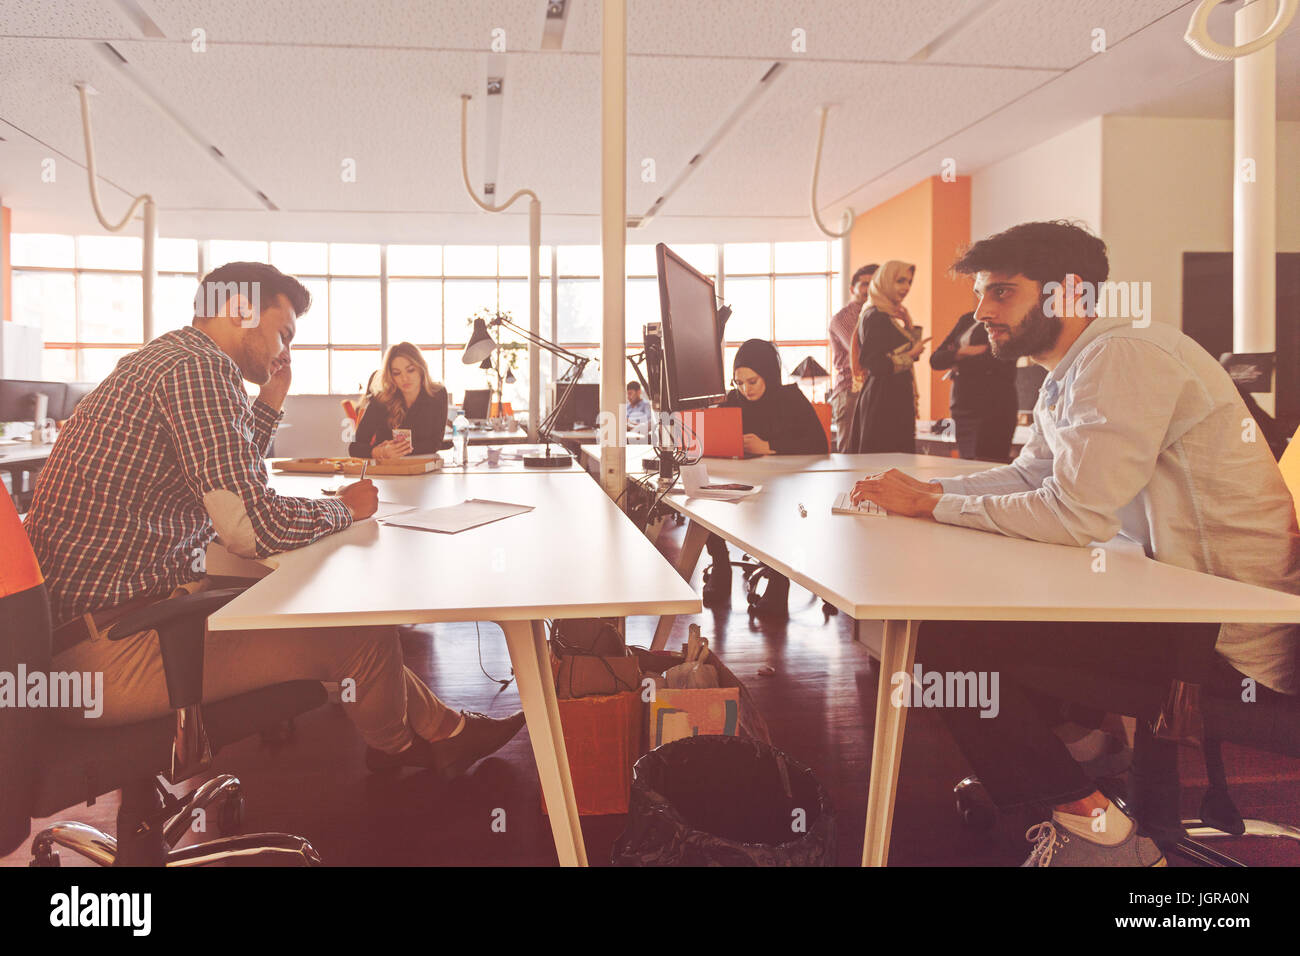 Gente de negocios inicio grupo de trabajo cotidiano en la oficina moderna Foto de stock